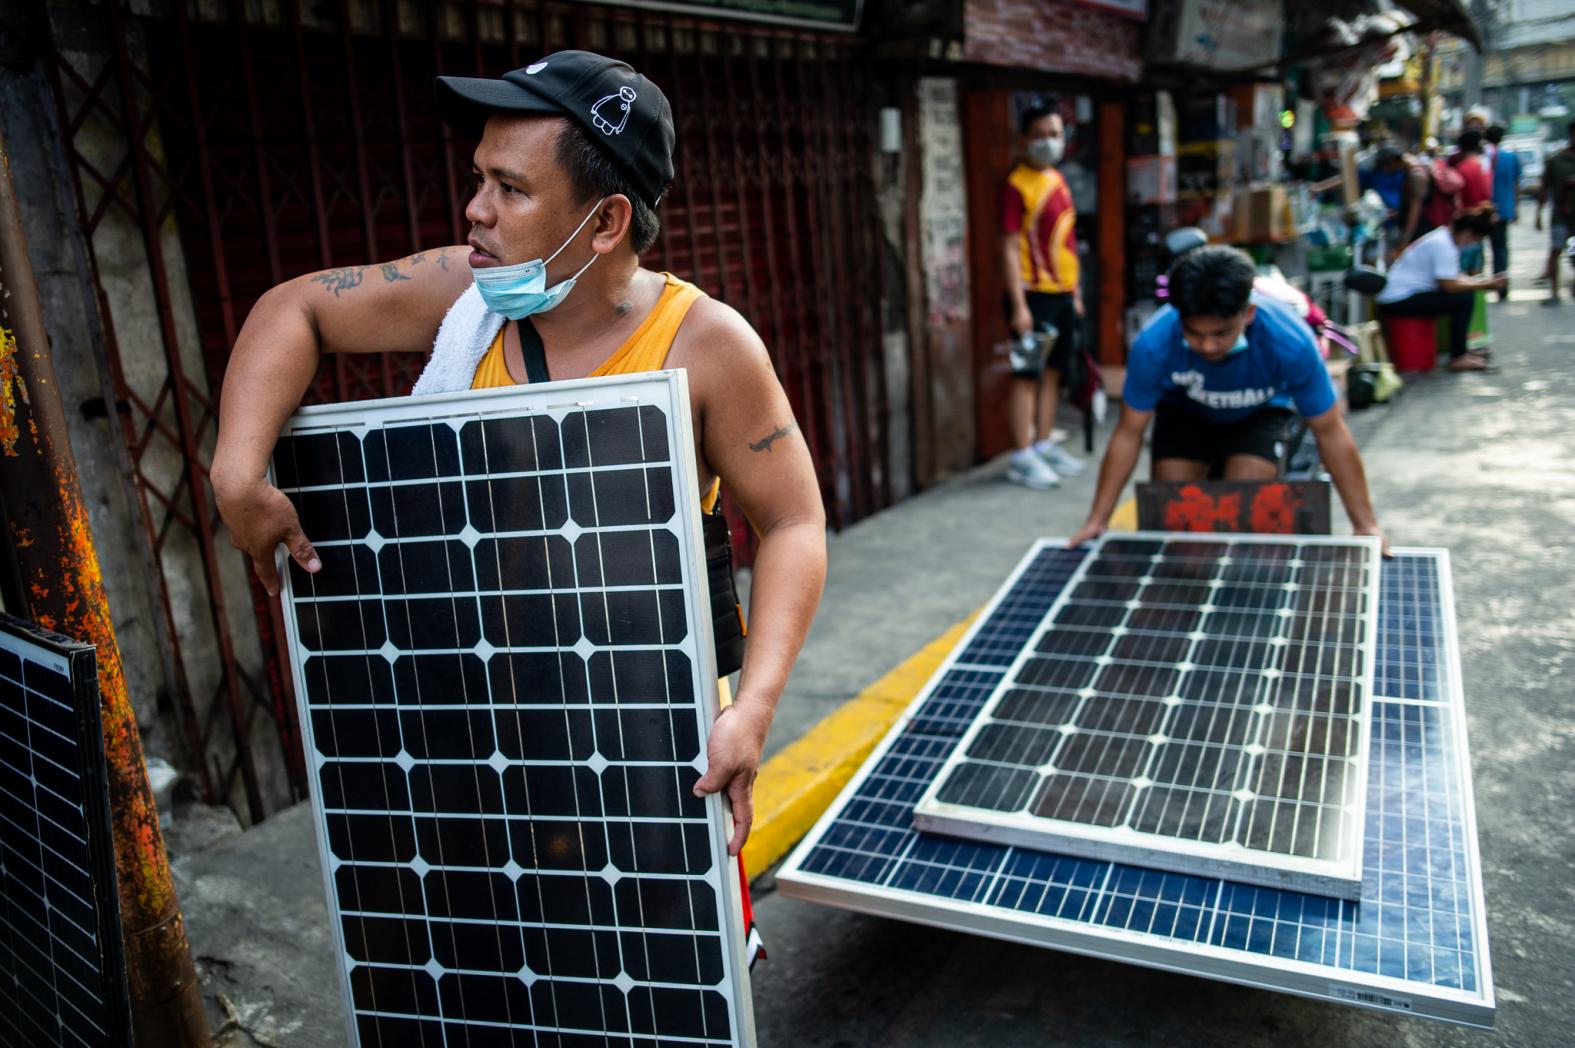 <p>homens carregam painéis solares</p>“></p>



<p>Trabalhadores carregam painéis solares em uma rua de Manila, nas Filipinas. Alguns esforços proativos podem ajudar trabalhadores e comunidades na transição para uma economia não mais baseada em combustíveis fósseis (Foto: IMF Photo/ Lisa Marie David)</p>



<h3>7. Coordenar a ação com políticas de outras áreas</h3>



<p>A ação climática faz parte de uma trama muito mais ampla de políticas que devem ser analisadas em conjunto para garantir equidade social. A falta de coerência e coordenação entre diferentes órgãos e instâncias de governança pode reduzir ou mesmo anular os benefícios que as intervenções climáticas poderiam gerar para grupos de baixa renda e vulneráveis.</p>



<p>É amplamente reconhecido que <a href=